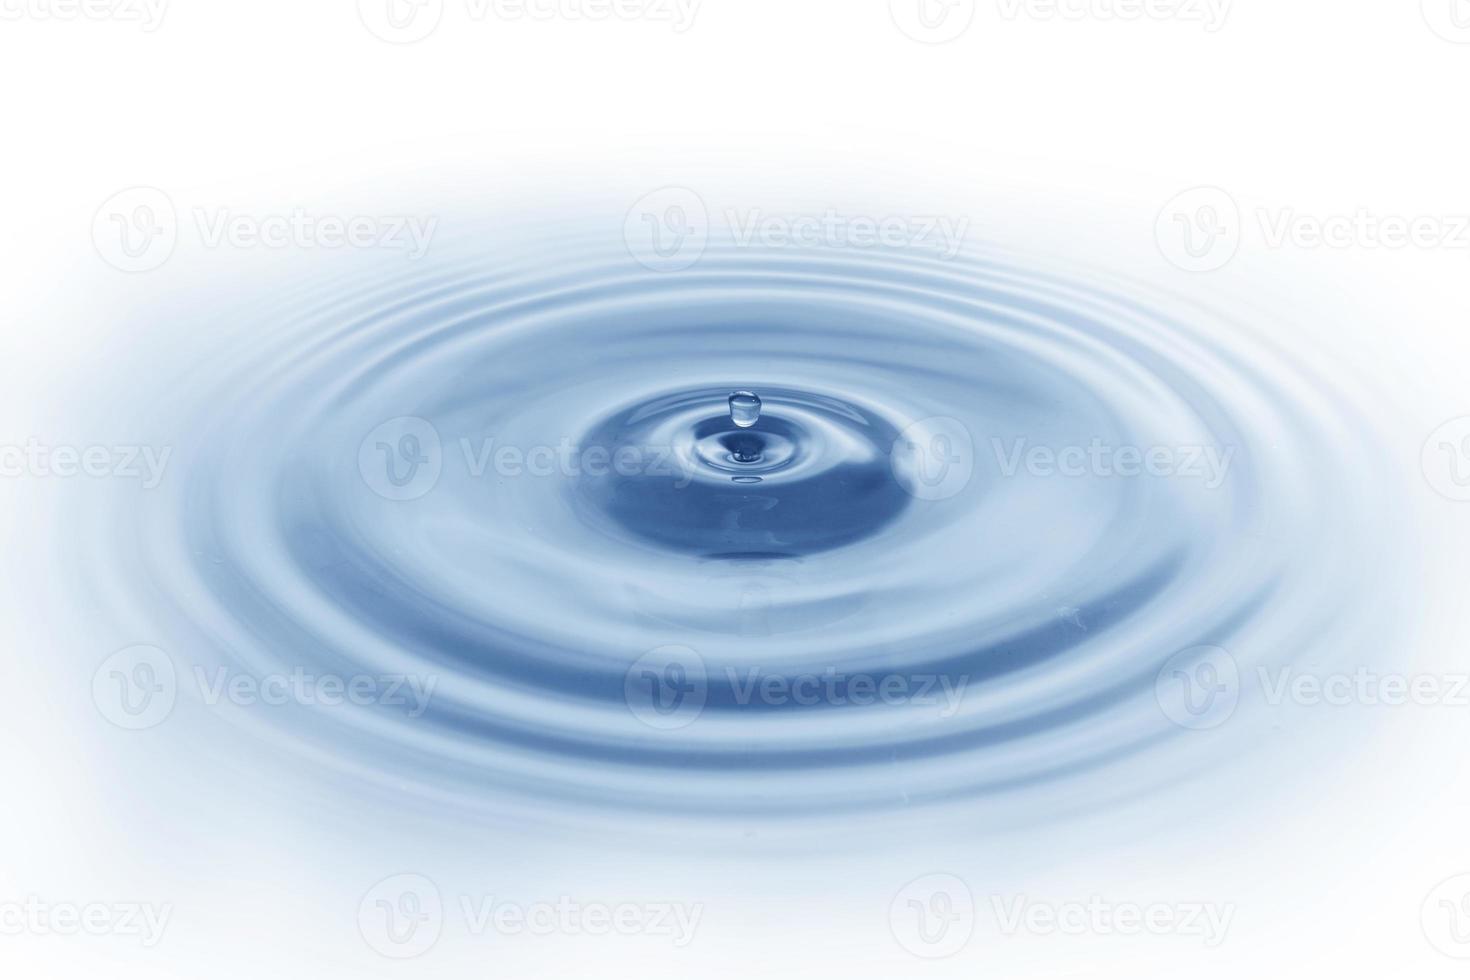 spatwater, water druipend op het wateroppervlak blauwe watergolf geïsoleerd op een witte achtergrond foto